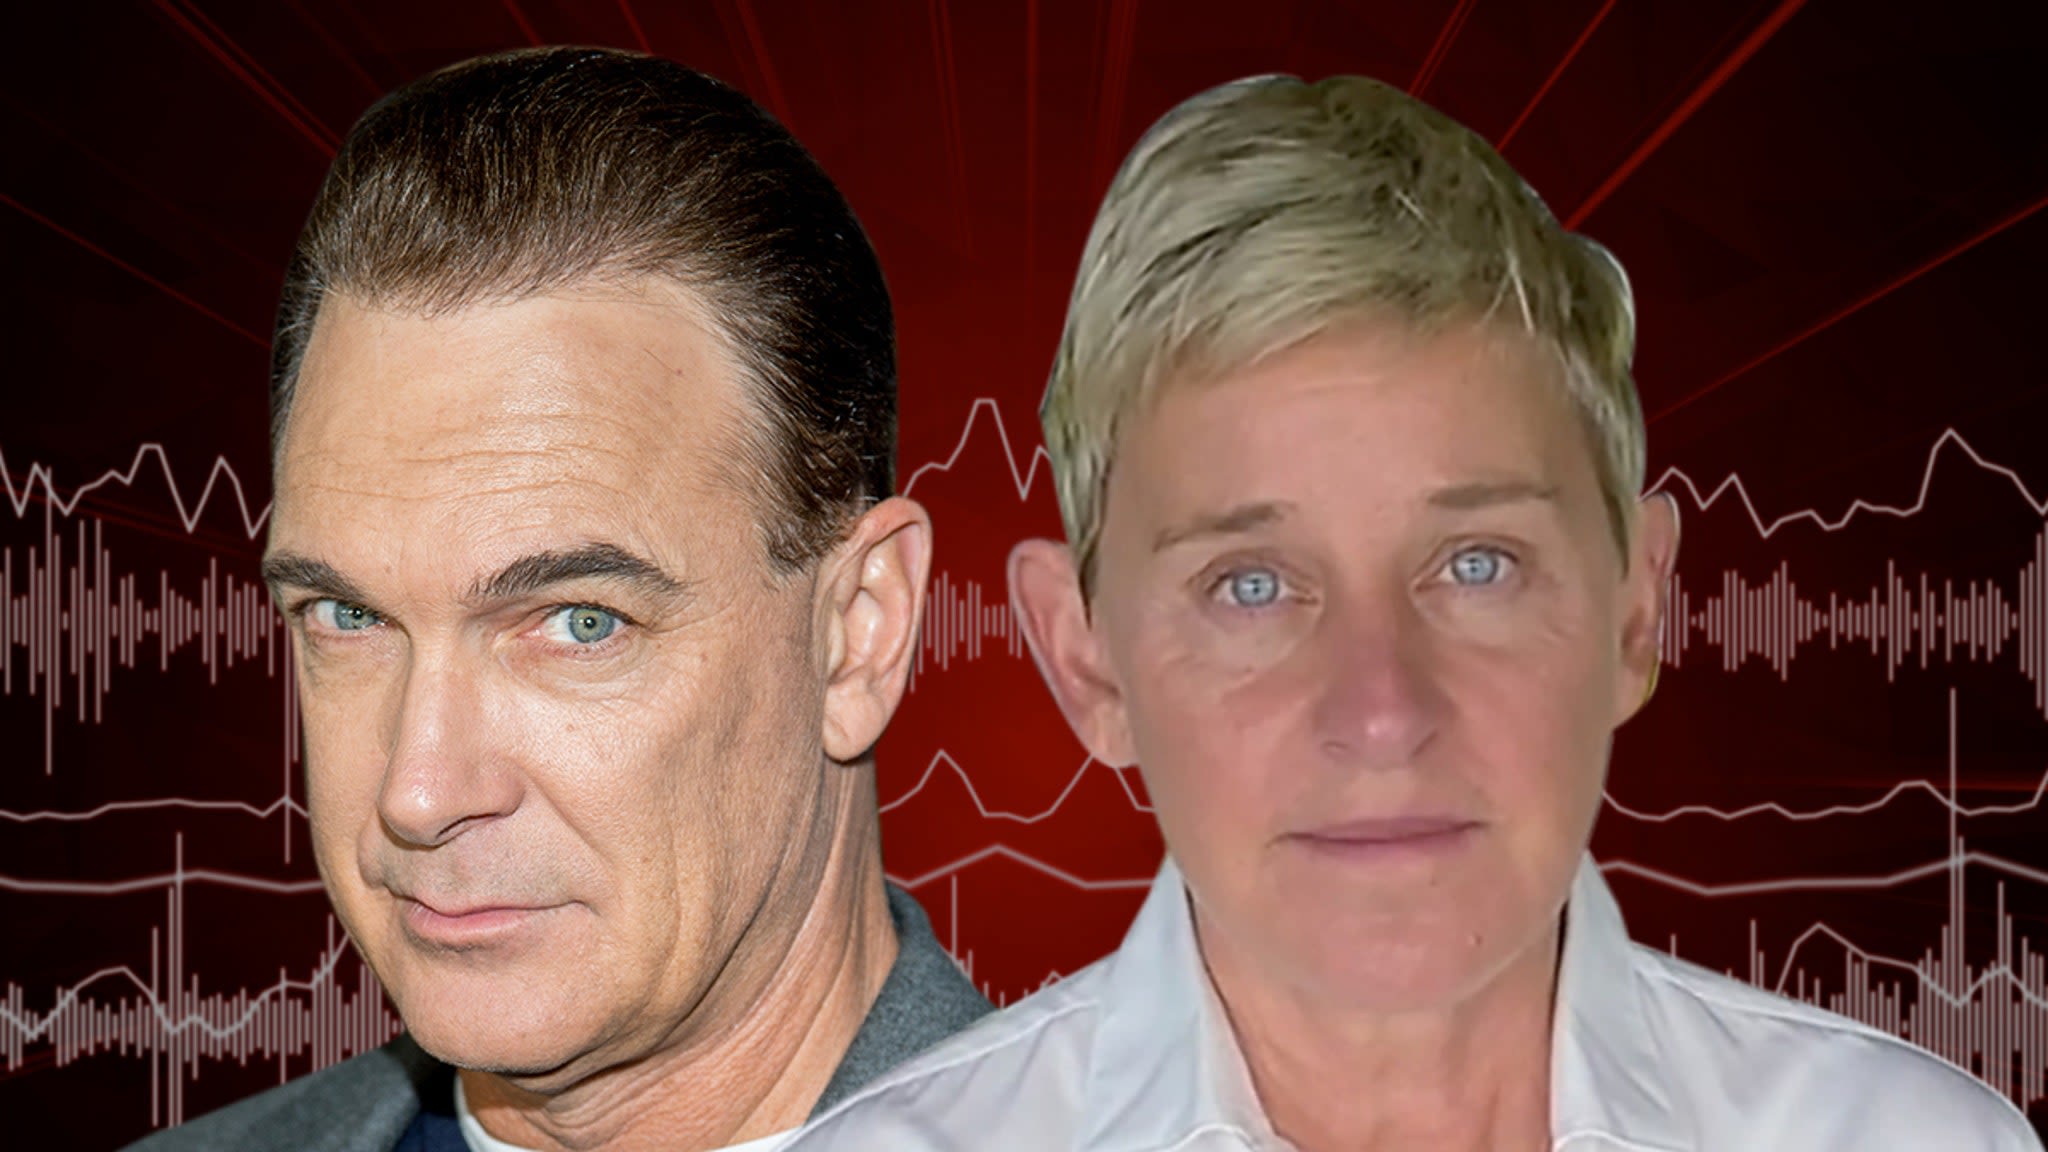 Patrick Warburton Calls Ellen DeGeneres 'Spurned' Over Rejected Role